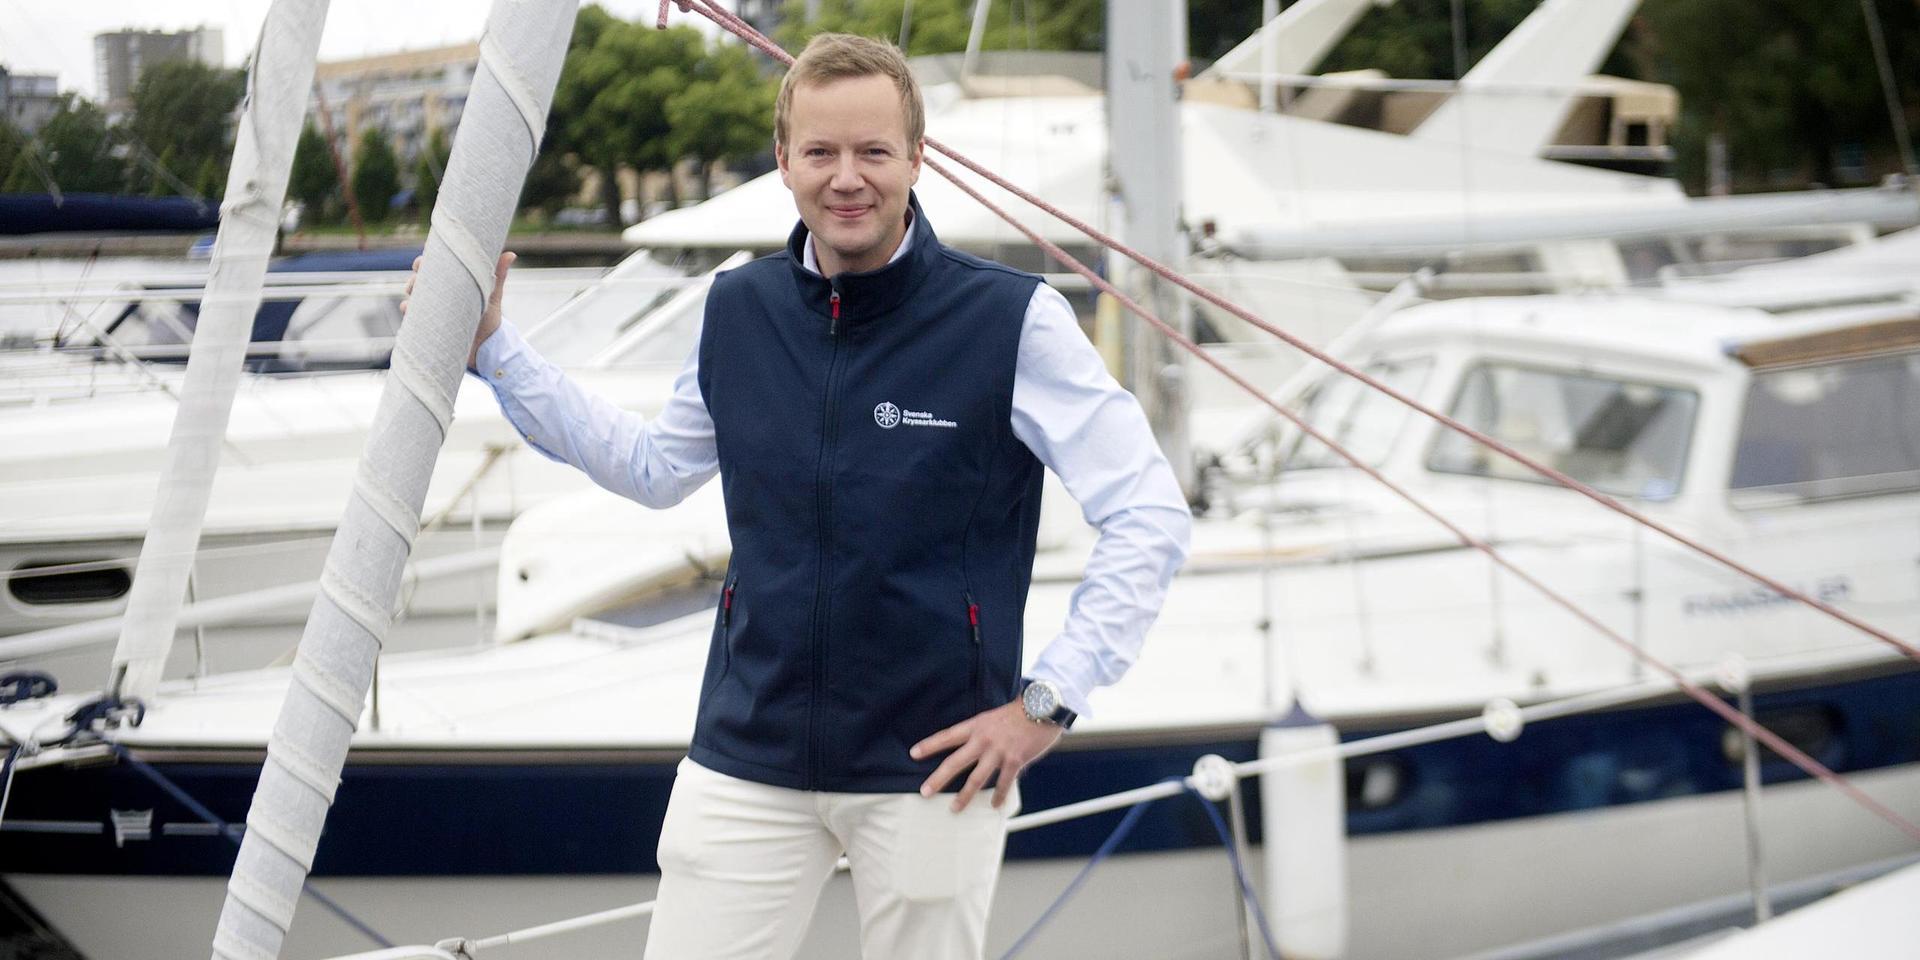 Fredrik Norén, Svenska Kryssarklubbens nya generalsekreterare, lärde sig segla hos Halmstads Segelsällskap.